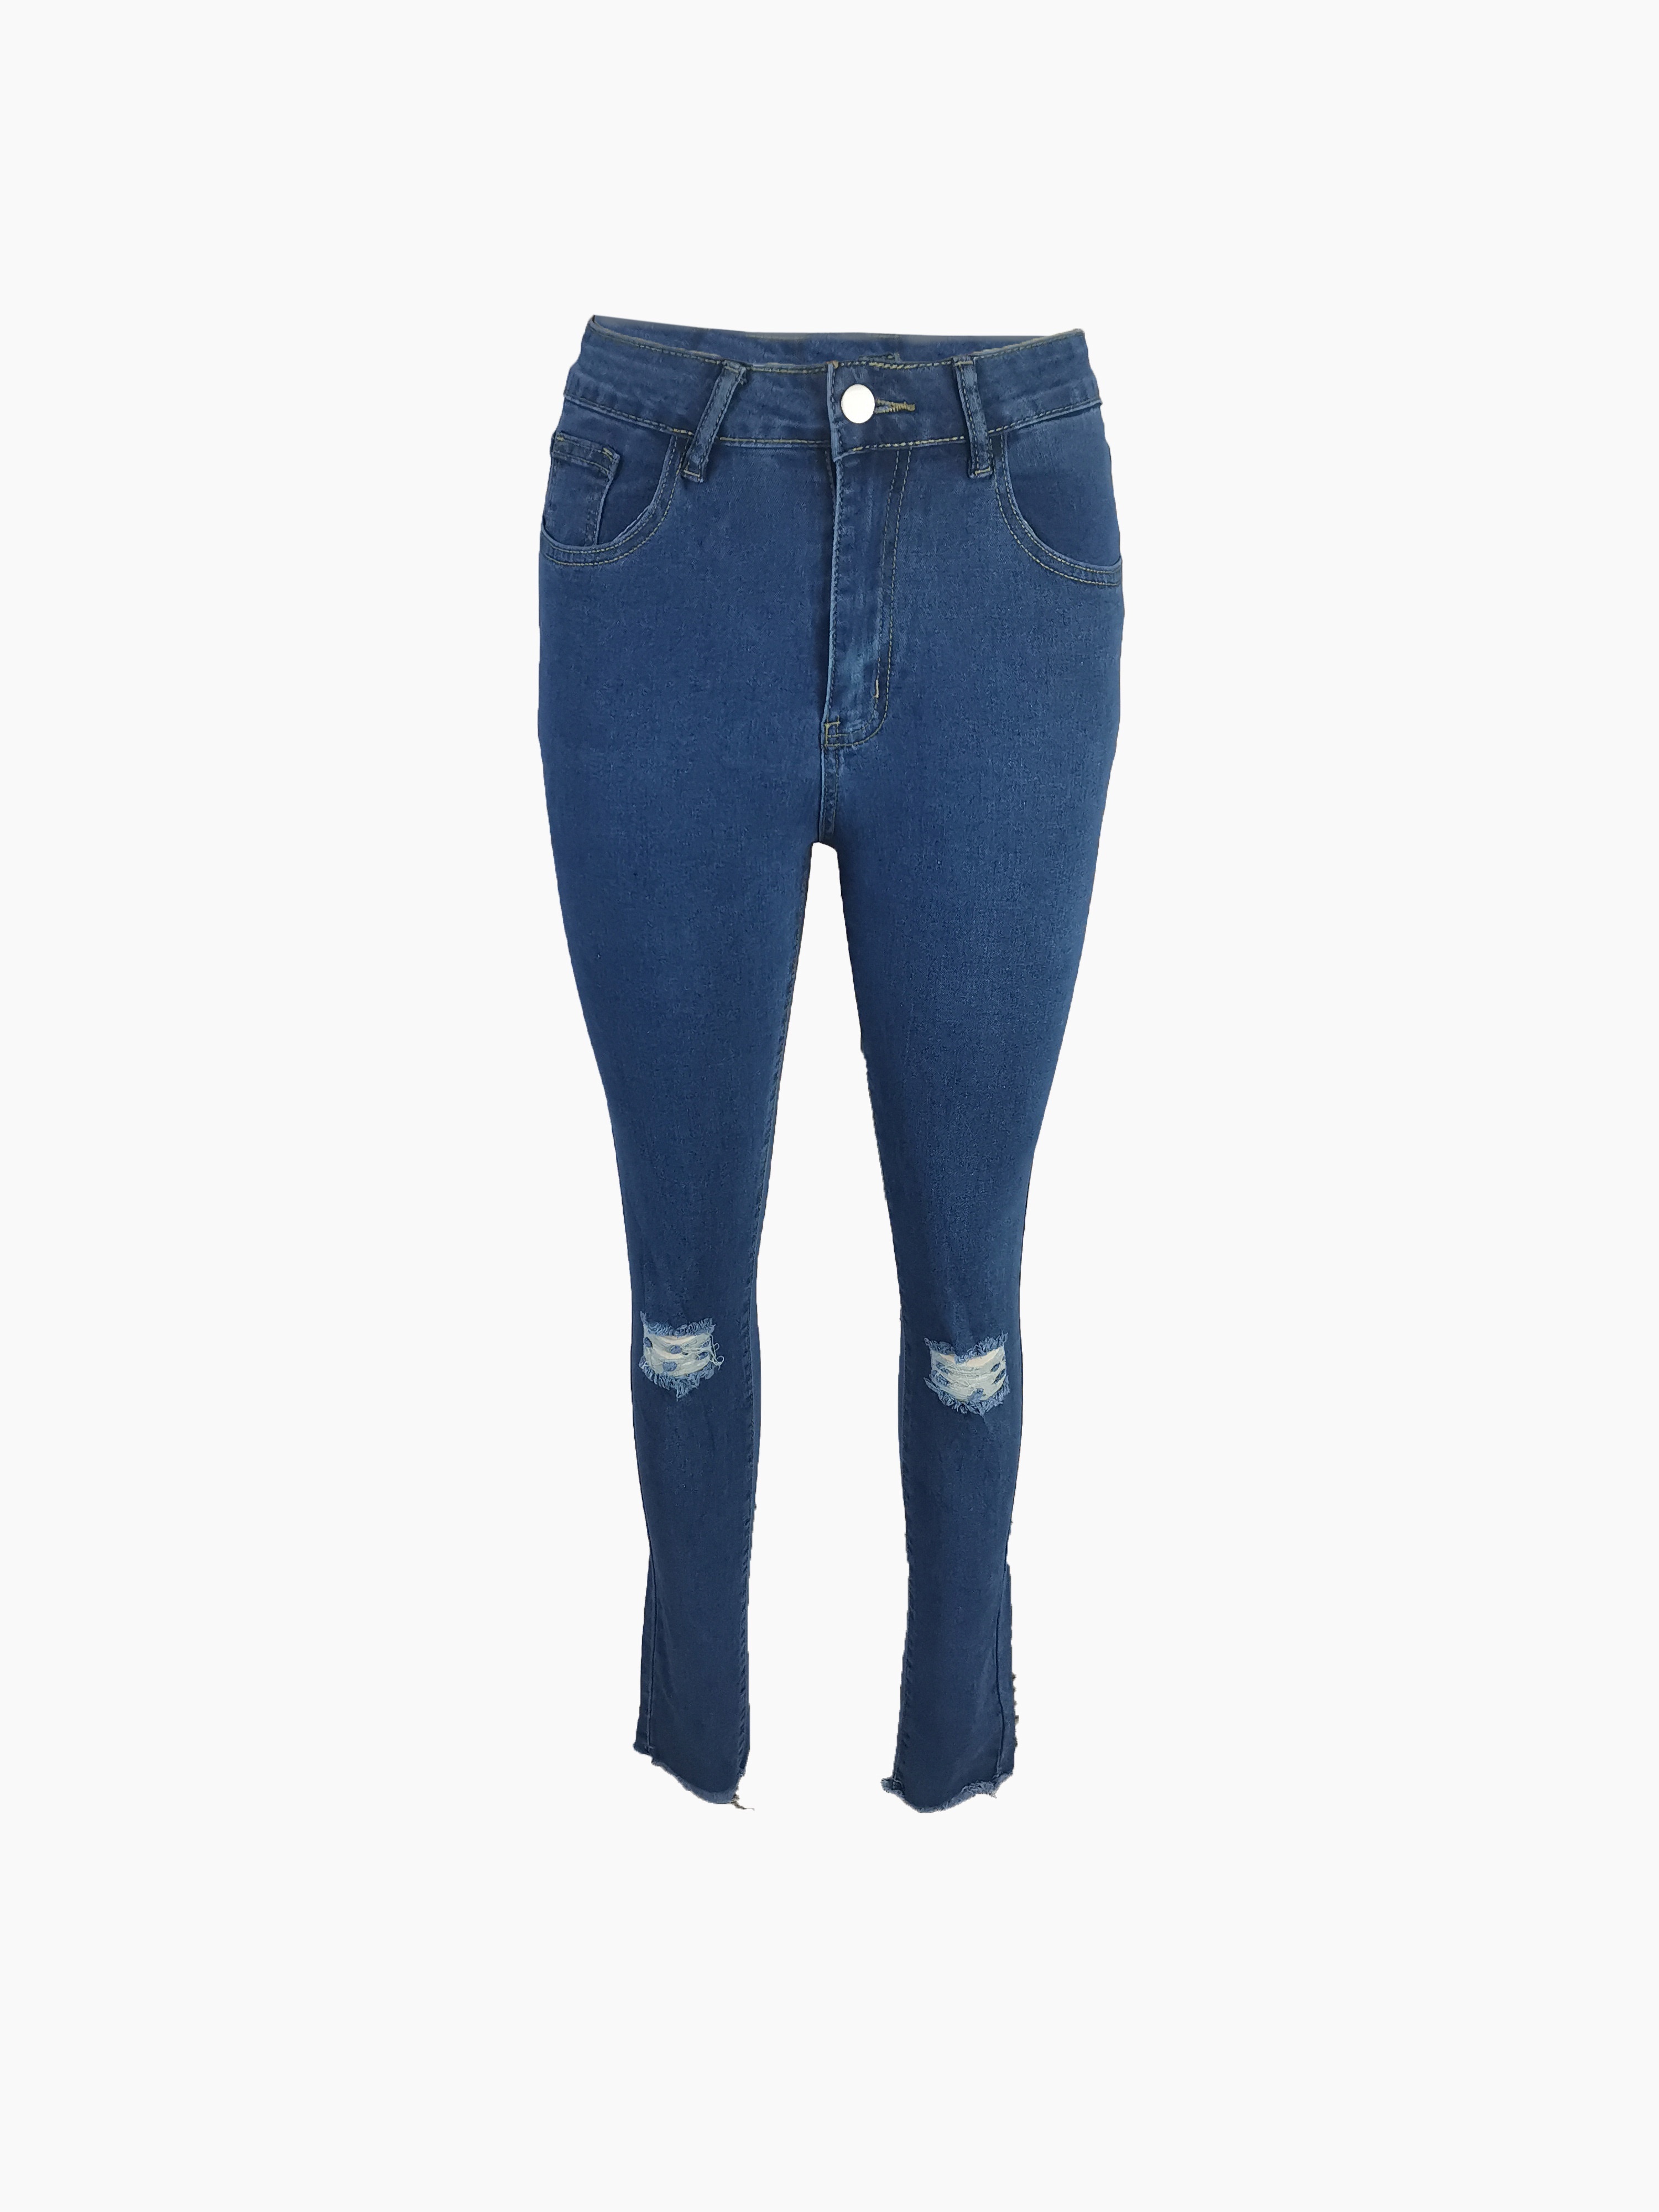 Blue Ripped Skinny Jeans Slash Pockets Distressed Tight Fit - Temu